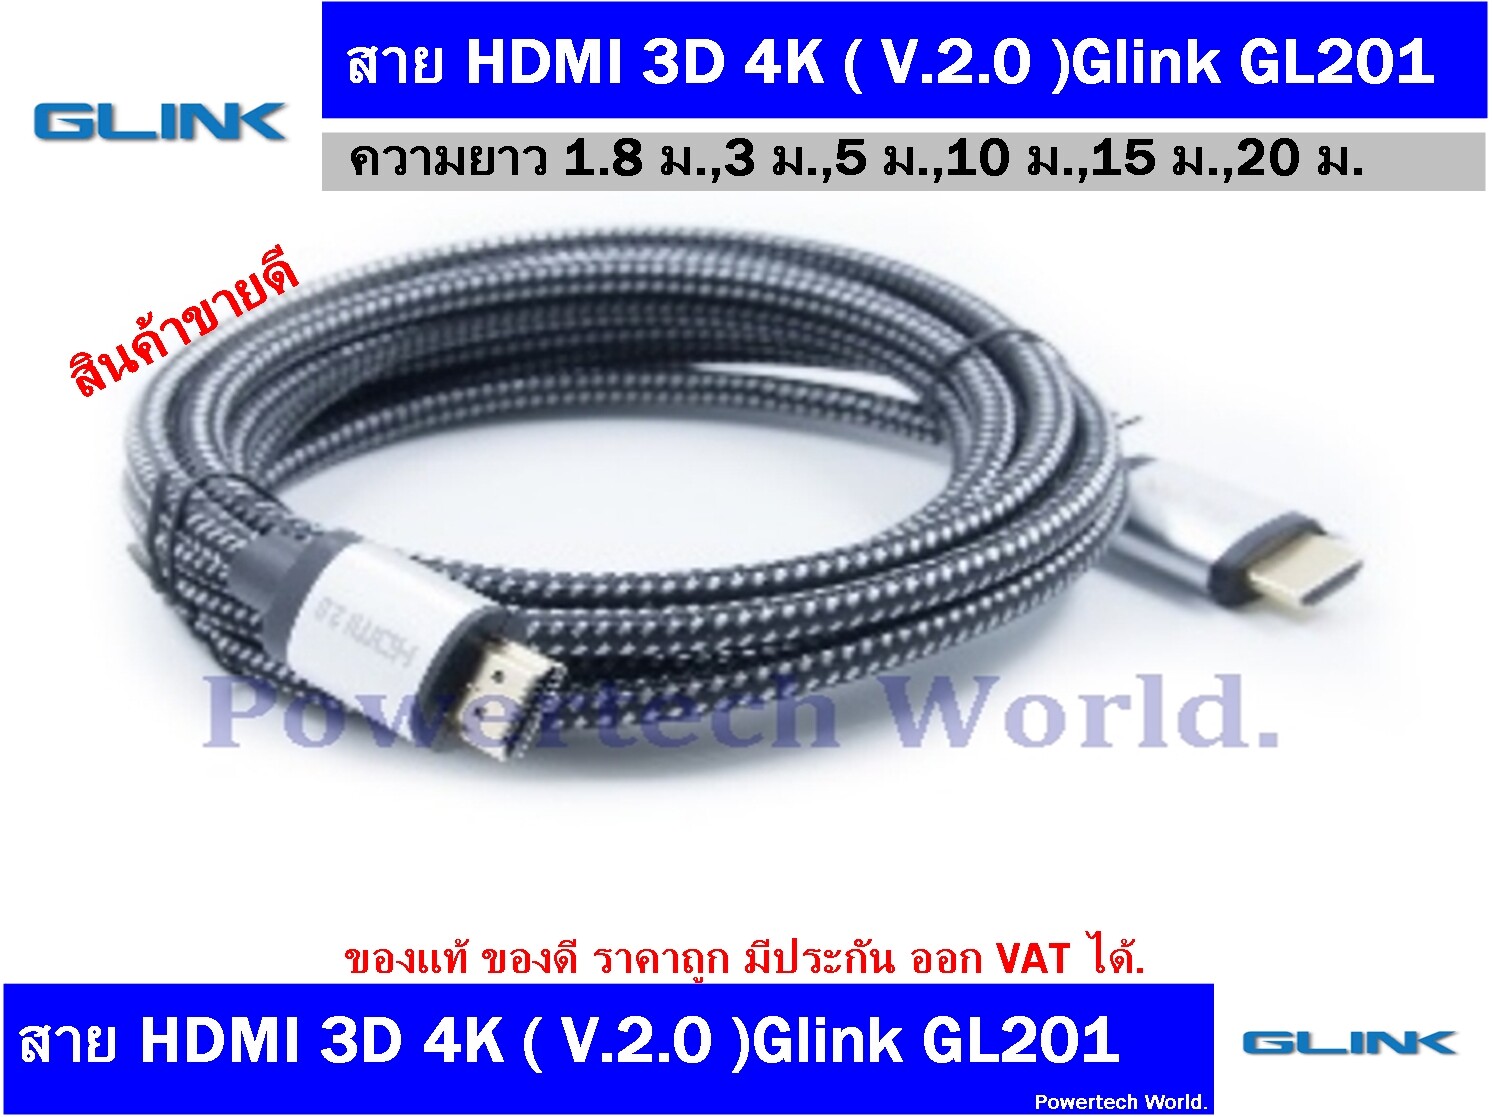 สาย HDMI 2.0 Glink 4K ยาว 10 เมตร สายอย่างดี (ใช้เชื่อมต่อคอมพิวเตอร์หรือโน๊ตบุ๊คกับทีวี ความคมชัดสูงระดับ 4K )